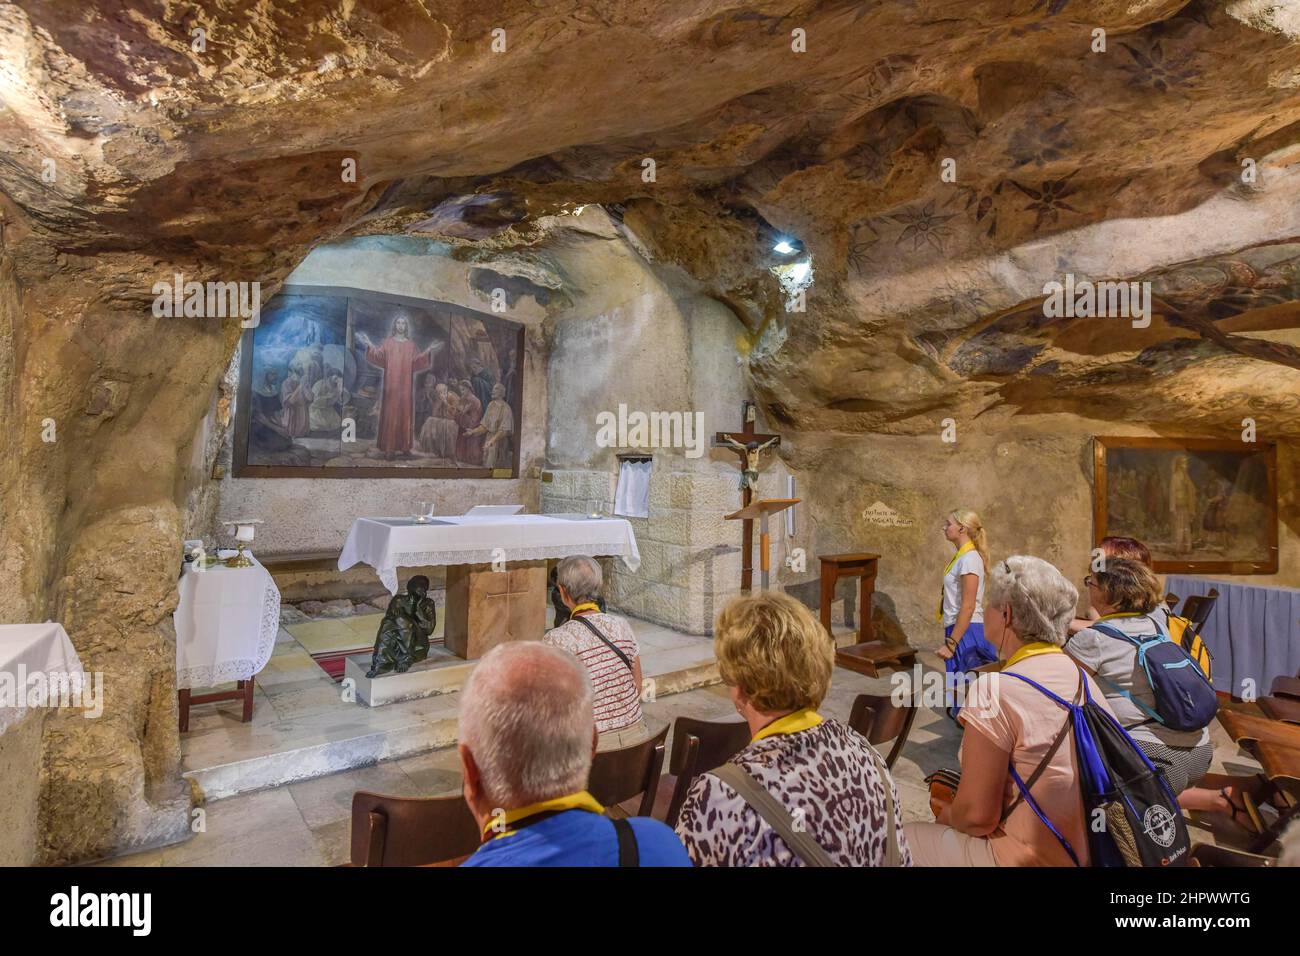 Catholics' Grotto of Betrayal, Mount of Olives, Jerusalem, Israel Stock Photo